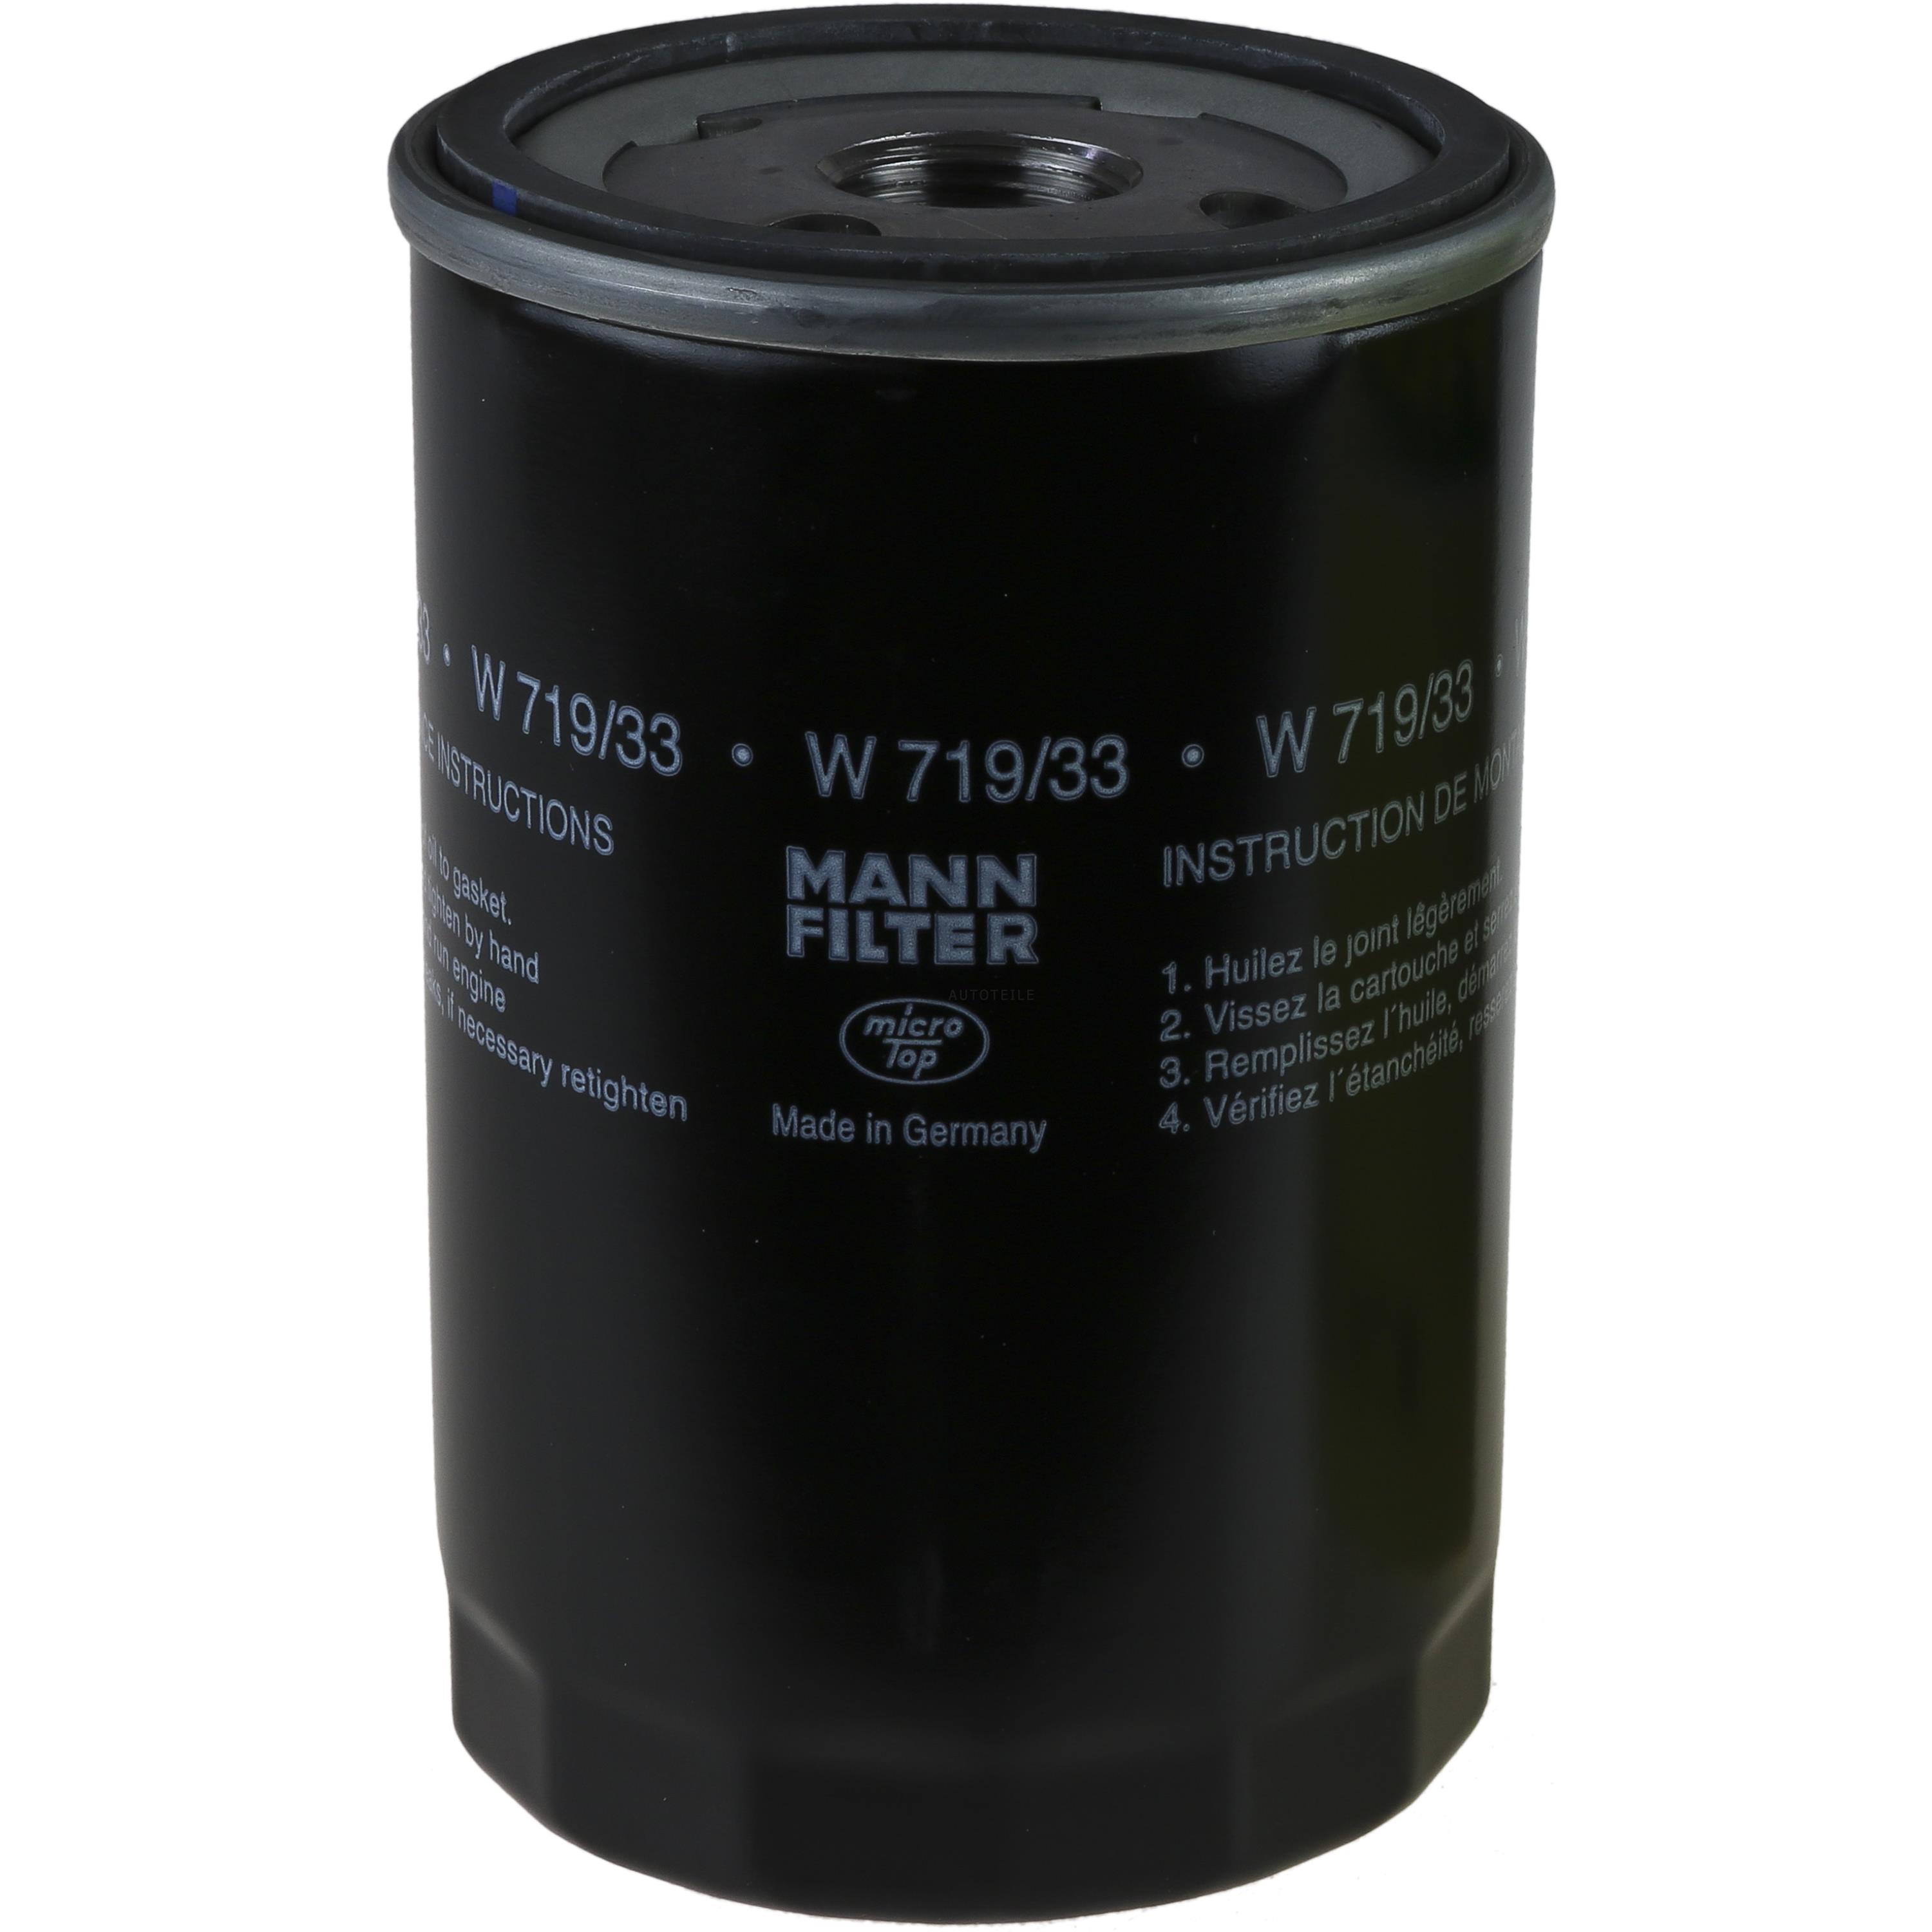 MANN-FILTER Ölfilter W 719/33 Oil Filter